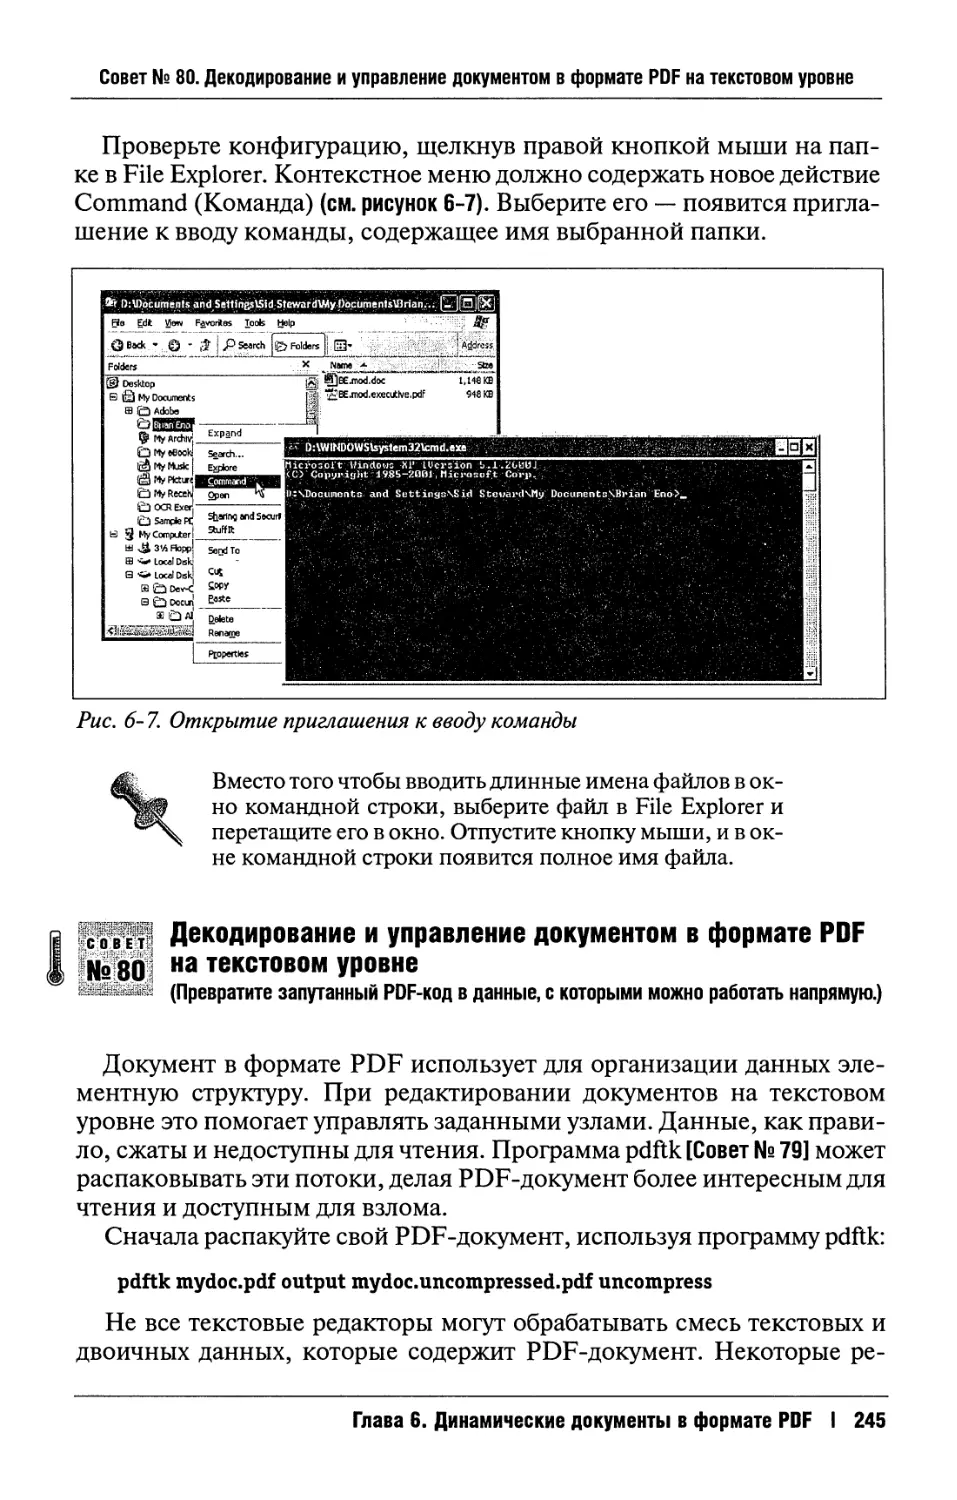 80. Декодирование и управление документом в формате PDF на текстовом уровне